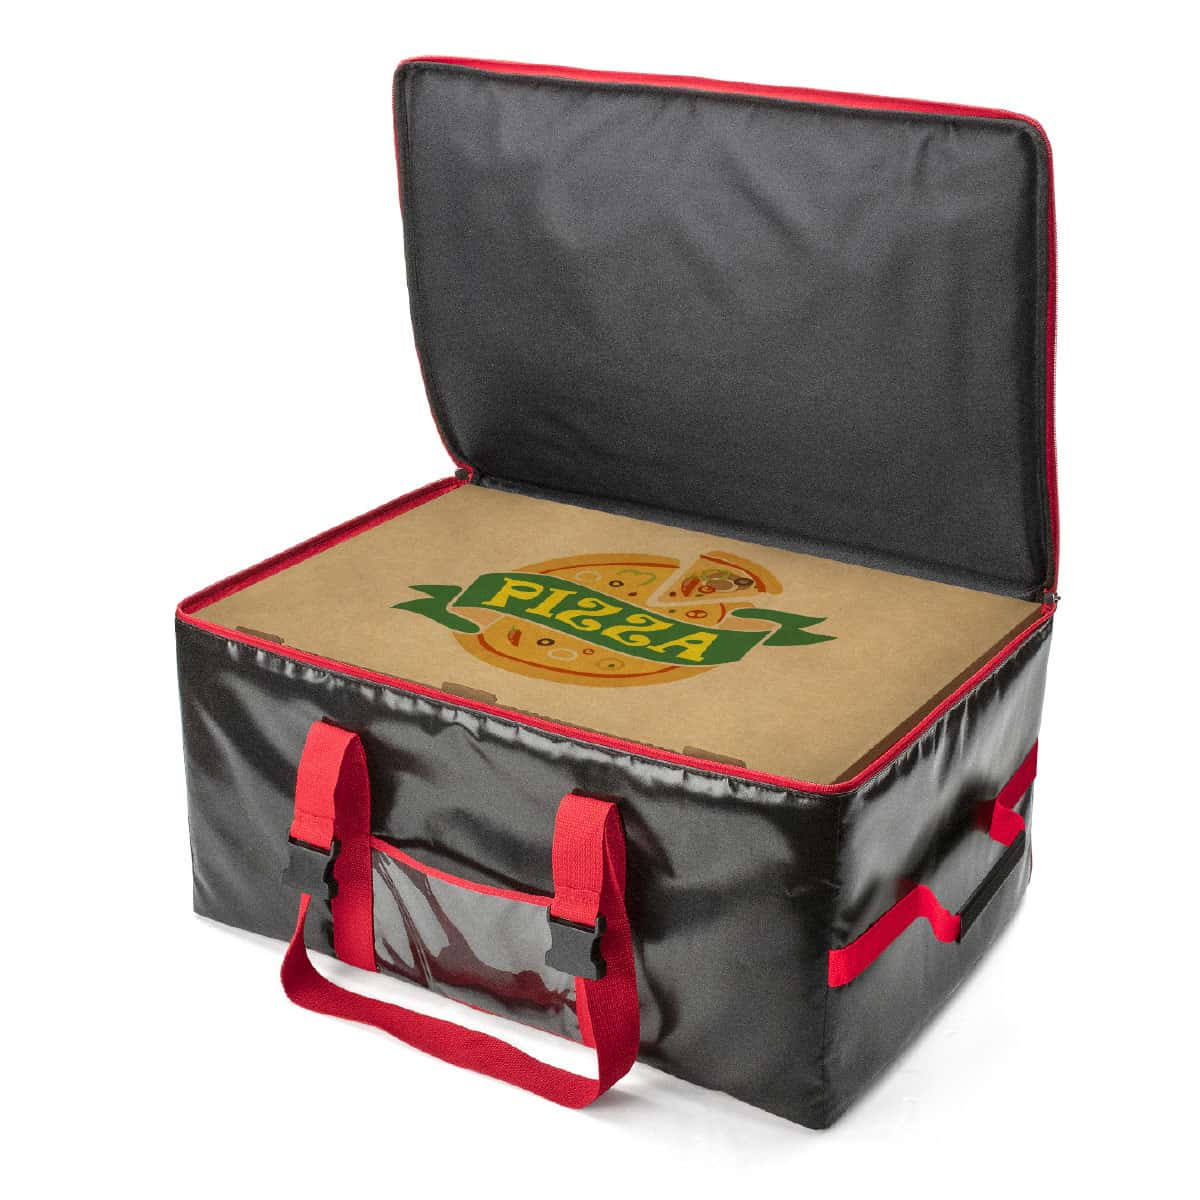 Puede contener hasta 5 cajas de pizza de 60x40 cm